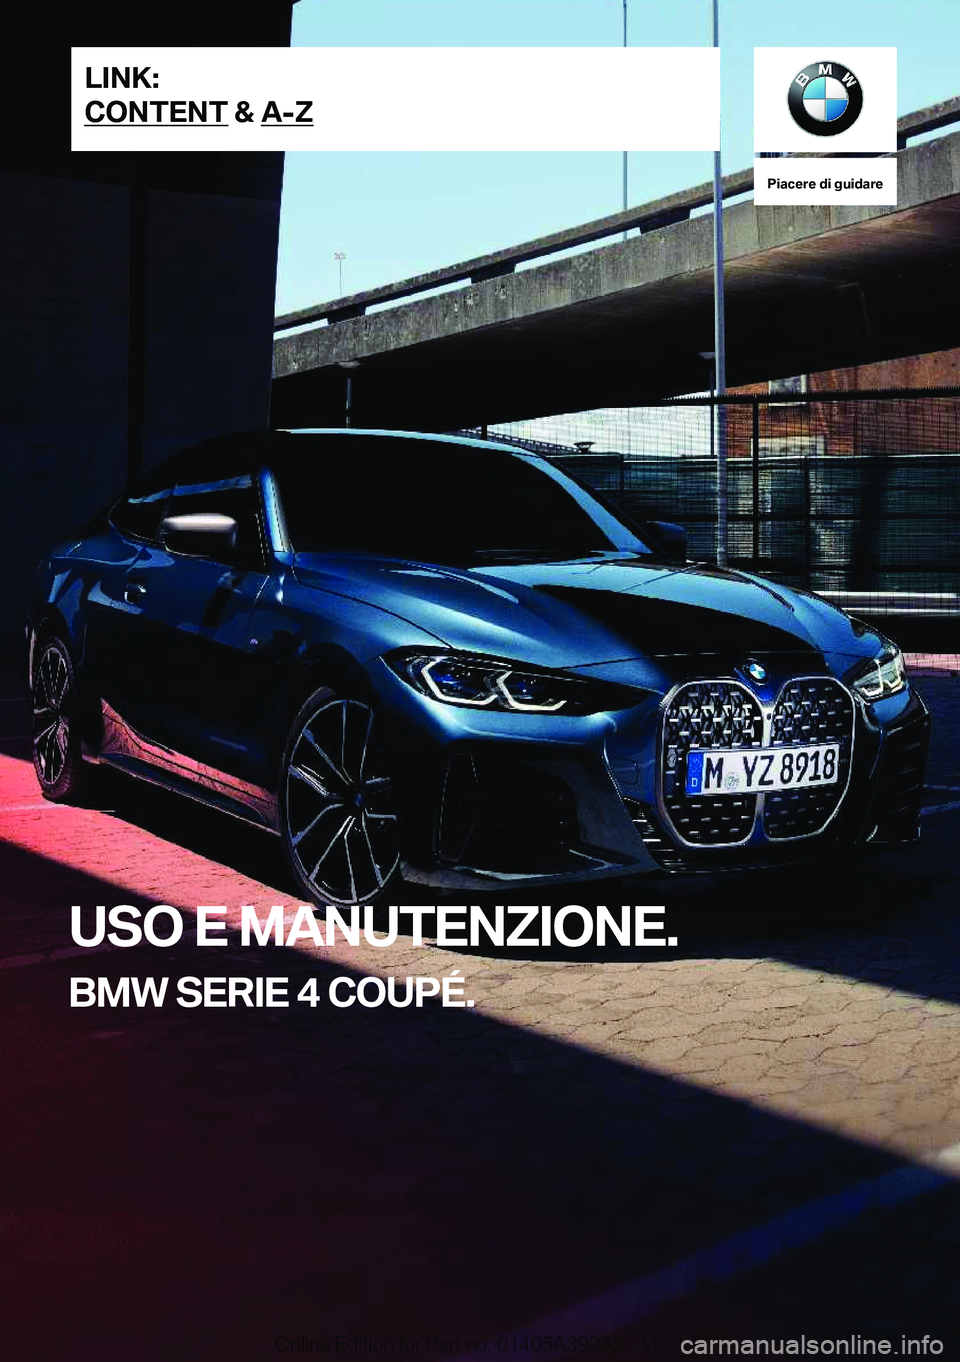 BMW 4 SERIES 2022  Libretti Di Uso E manutenzione (in Italian) �P�i�a�c�e�r�e��d�i��g�u�i�d�a�r�e
�U�S�O��E��M�A�N�U�T�E�N�Z�I�O�N�E�.
�B�M�W��S�E�R�I�E��4��C�O�U�P�